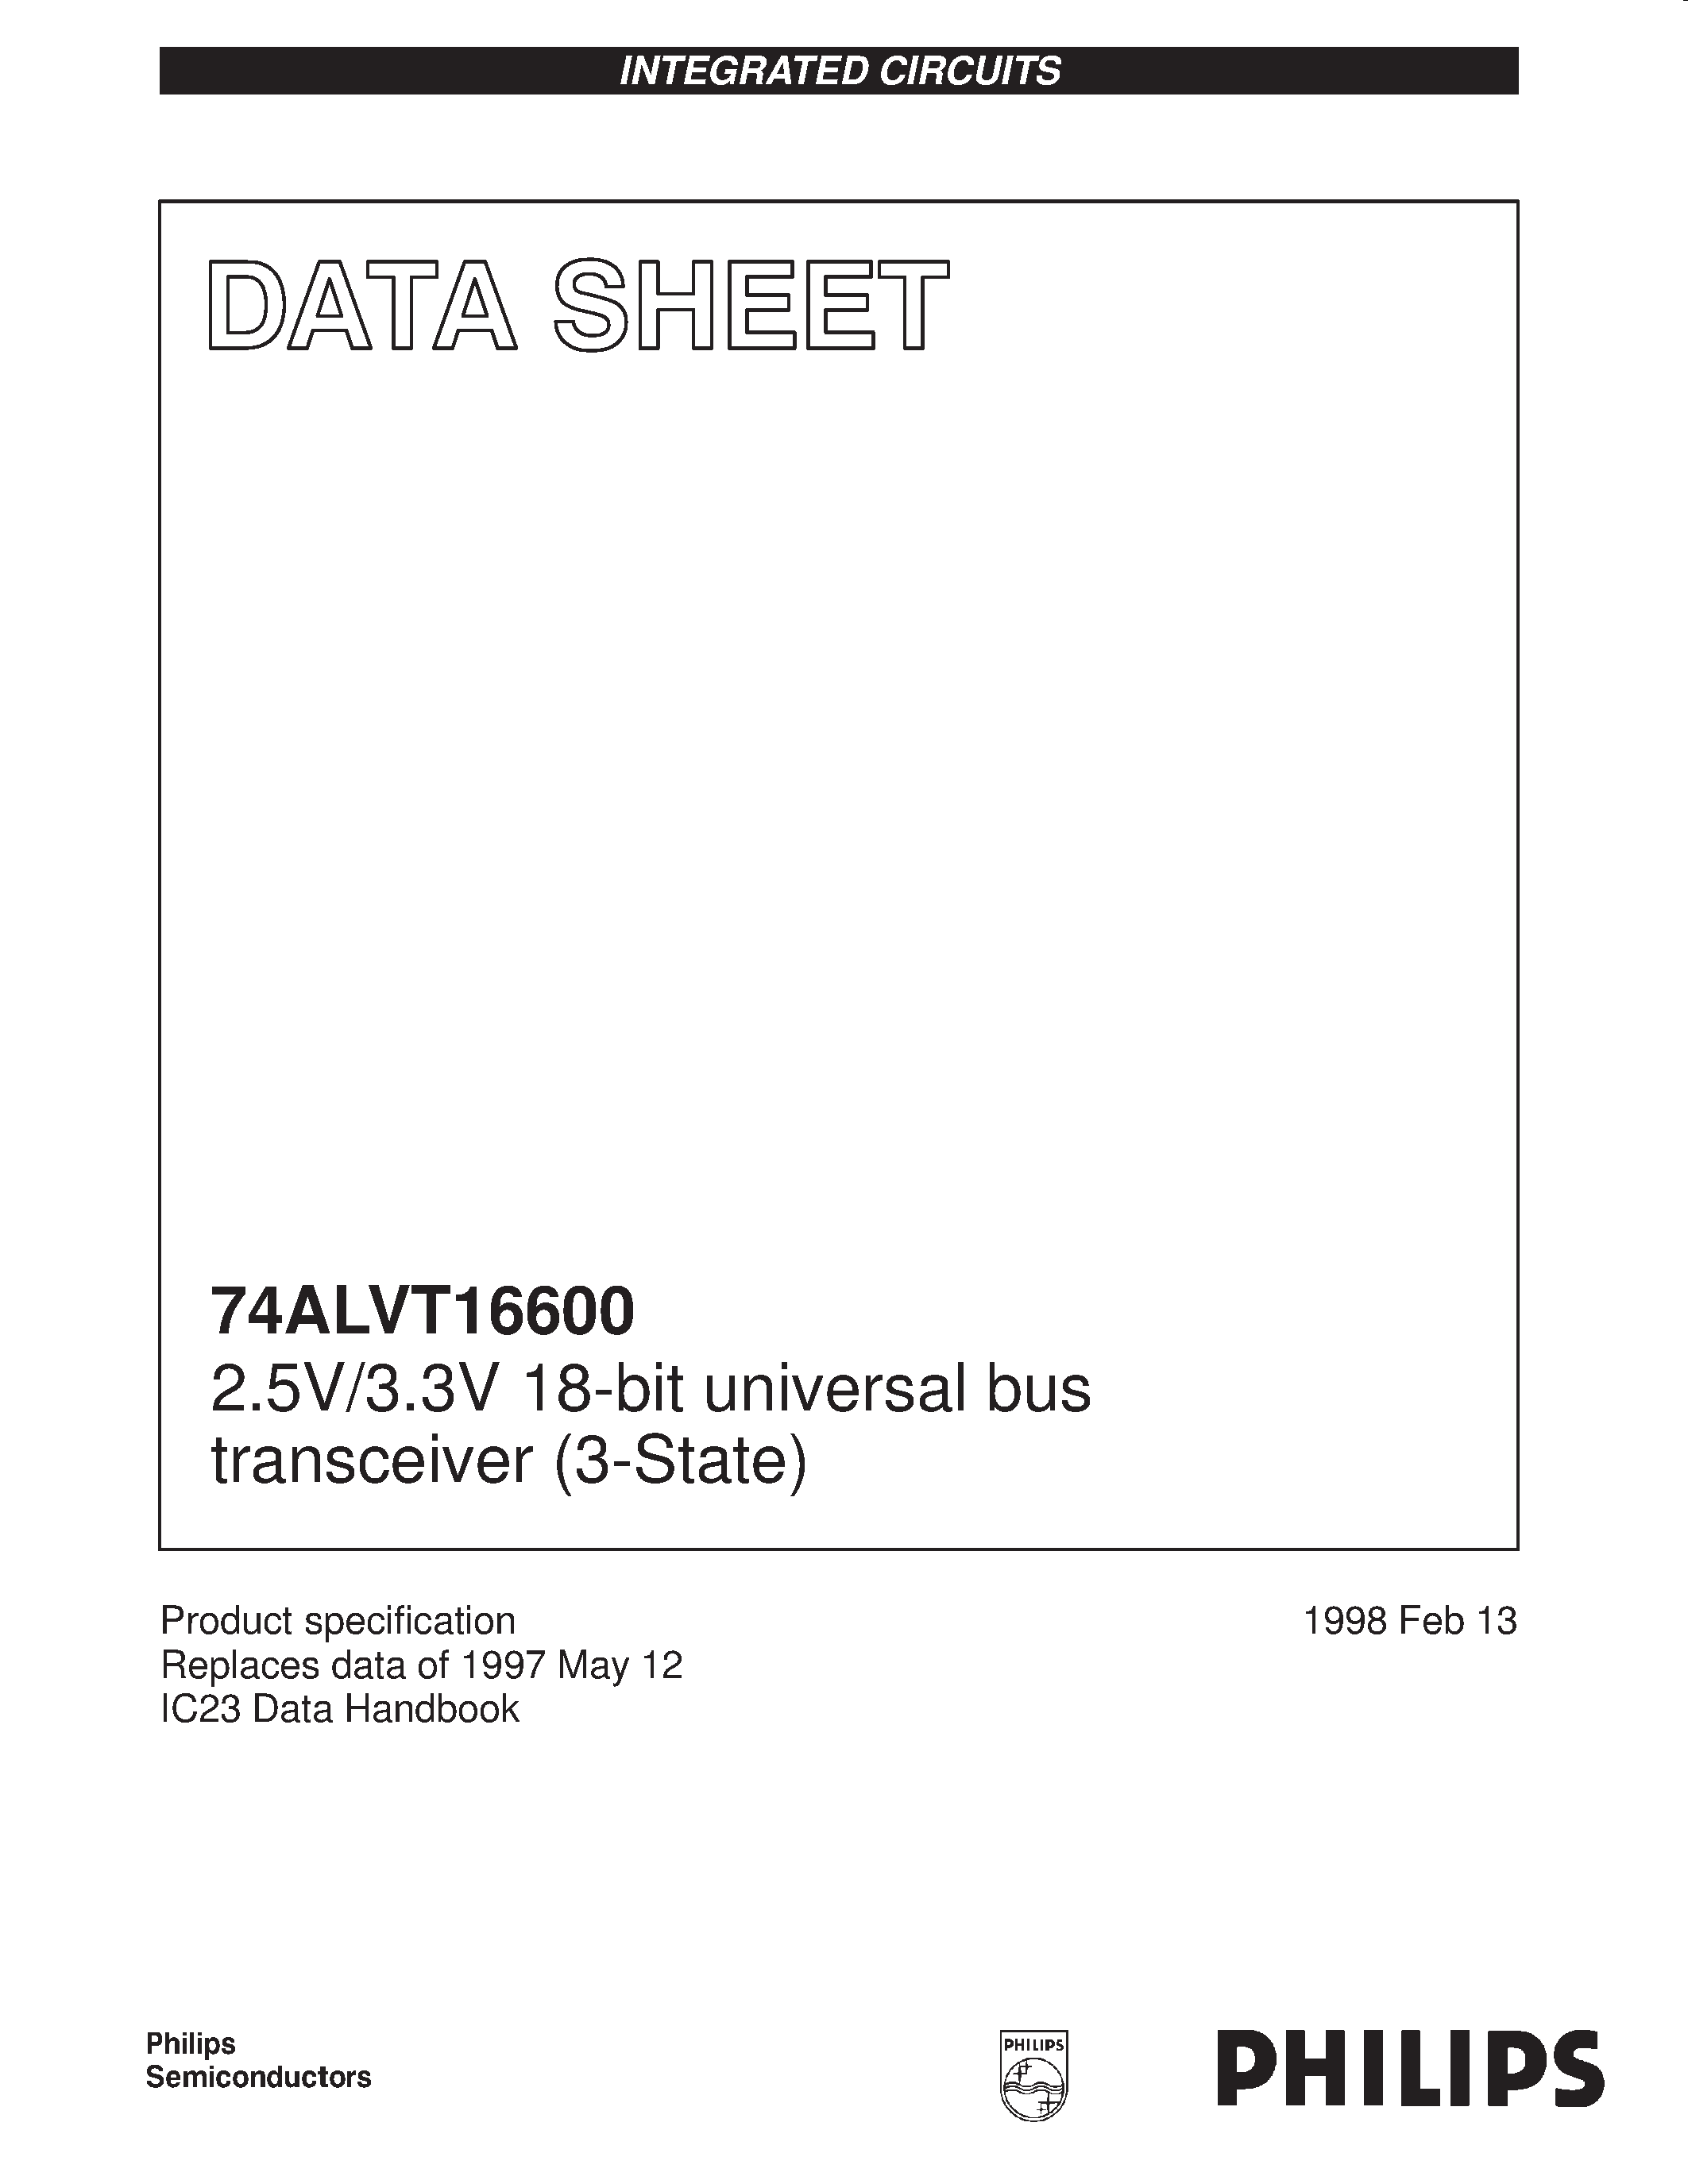 Datasheet 74ALVT16600DL - 2.5V/3.3V 18-bit universal bus transceiver 3-State page 1